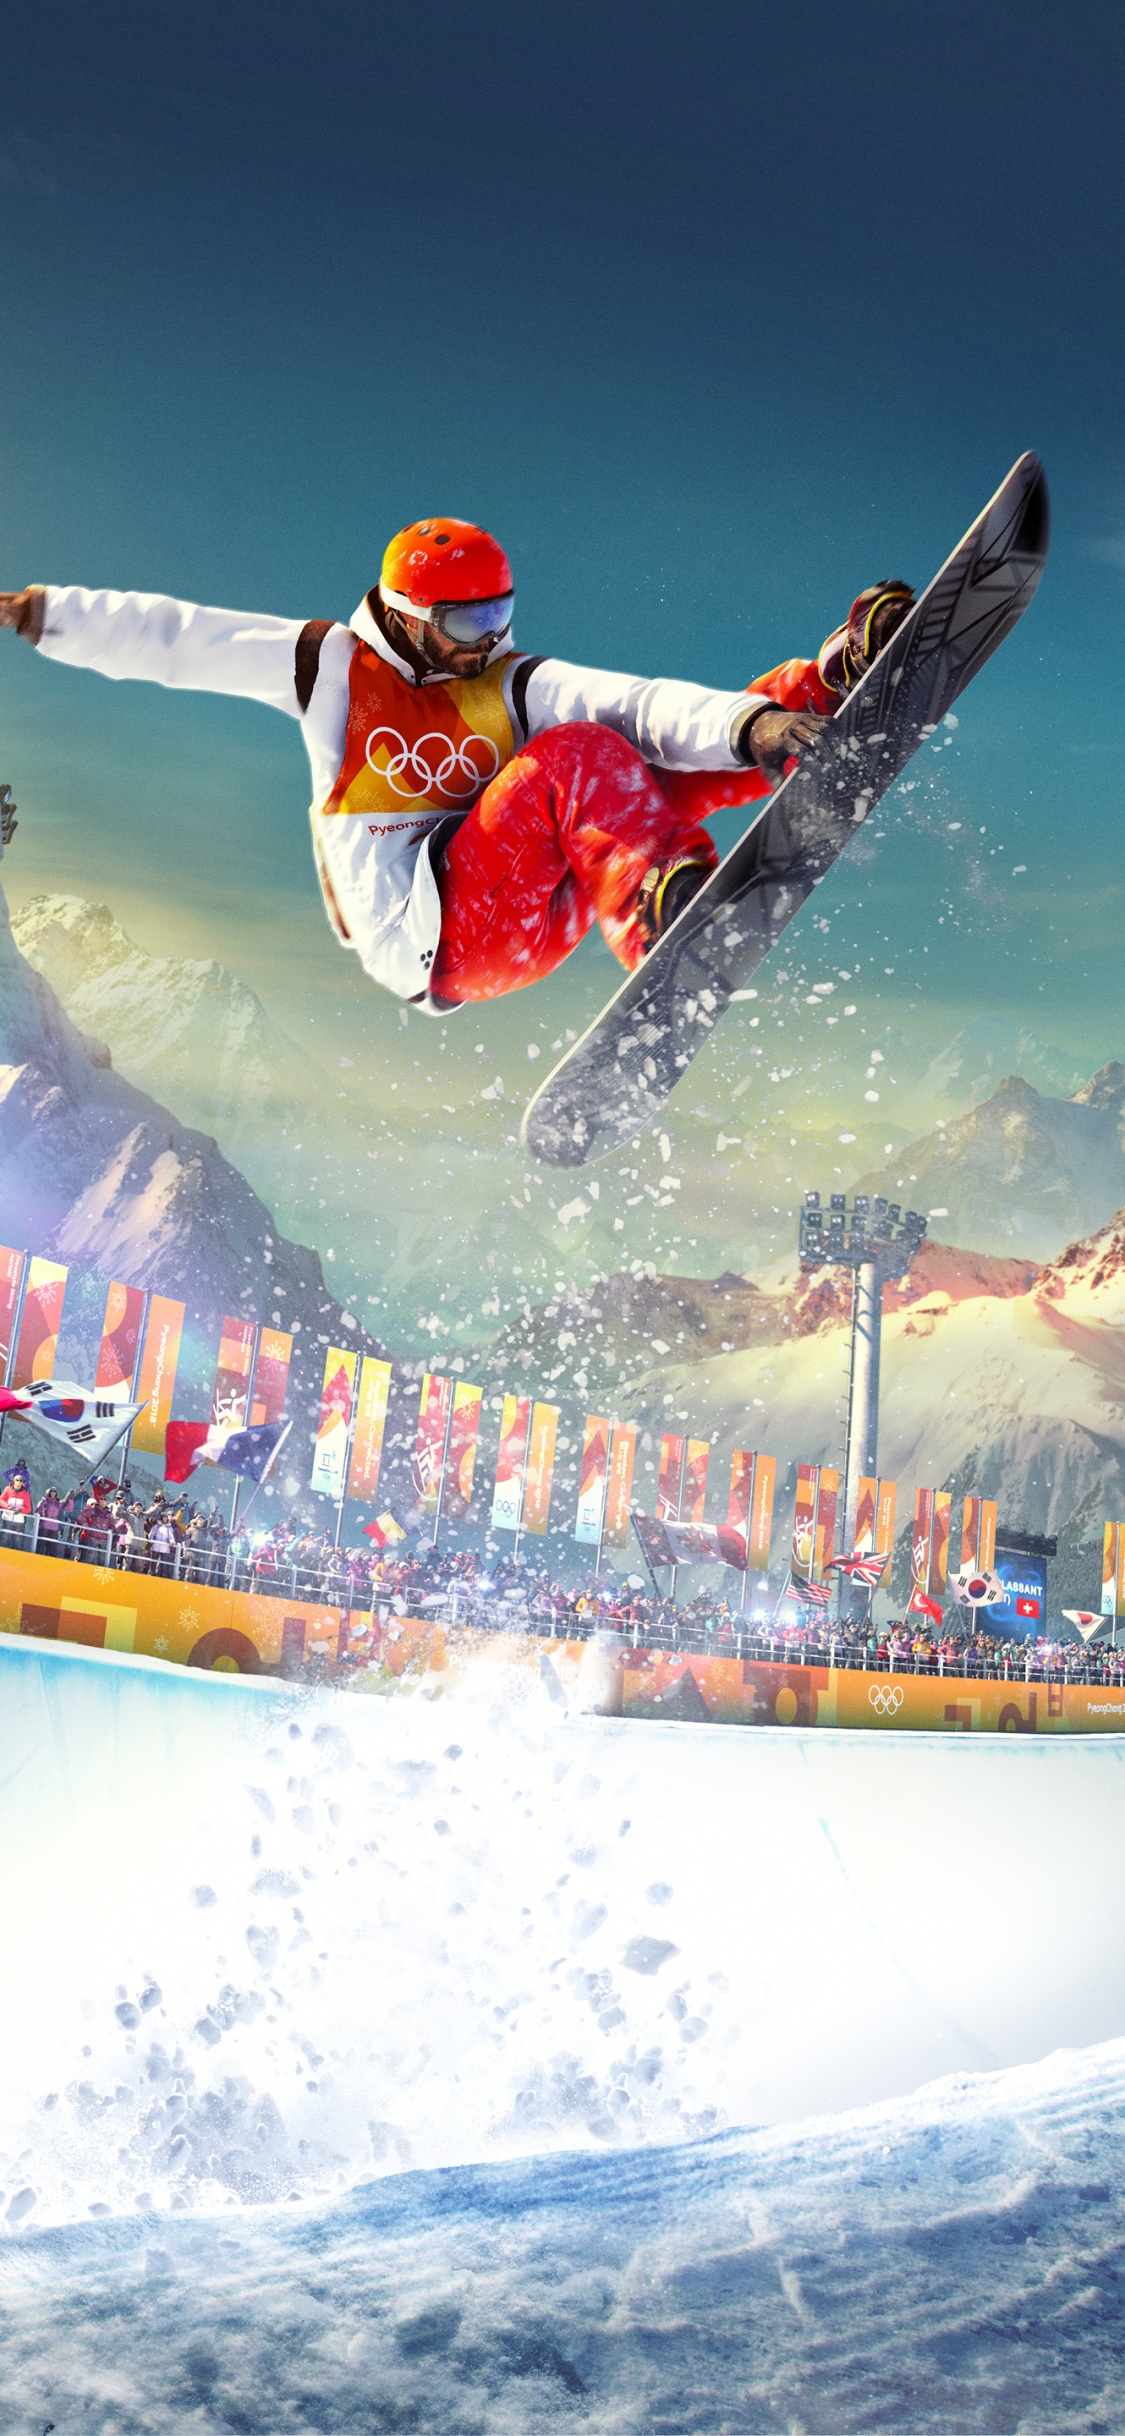 Hombre de Chaqueta Roja Cabalgando Sobre Tablas de Surf Blancas y Azules Durante el Día. Wallpaper in 1125x2436 Resolution